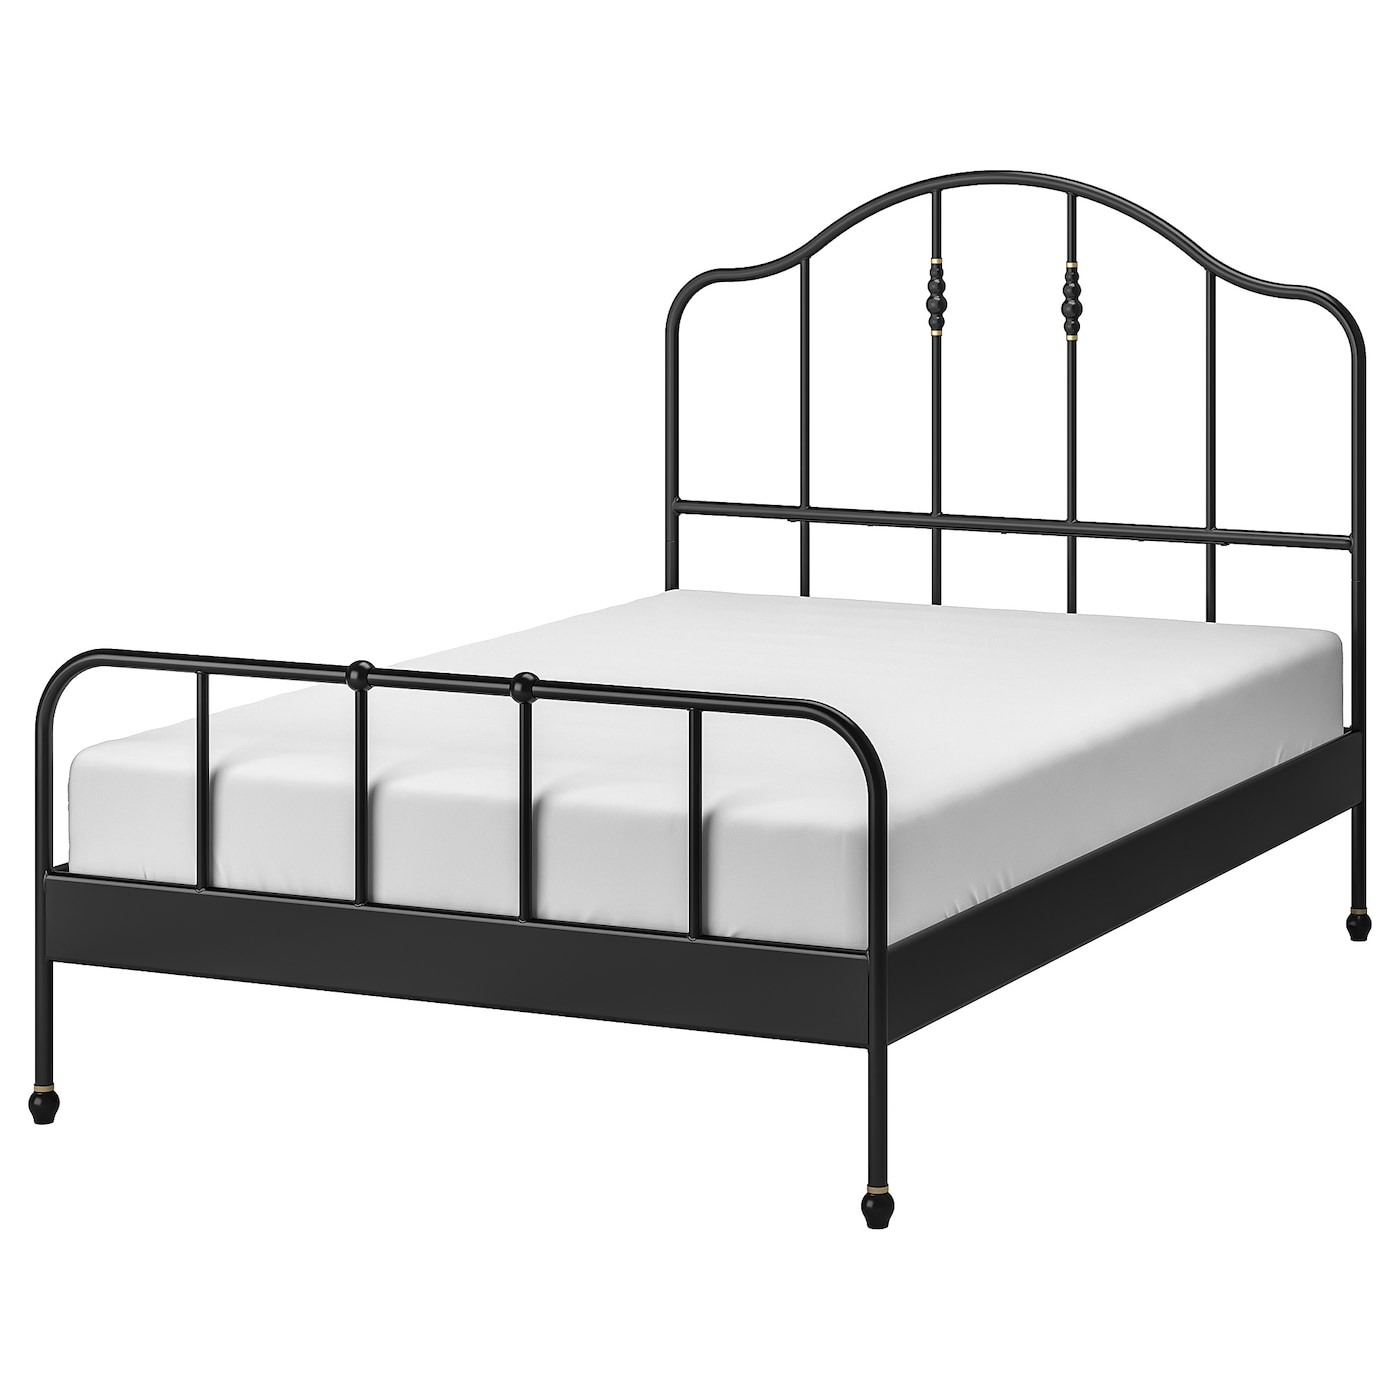 Двуспальная кровать - IKEA SAGSTUA/LINDBÅDEN/LINDBADEN, 200х140 см, черный, САГСТУА/ЛИНДБАДЕН ИКЕА